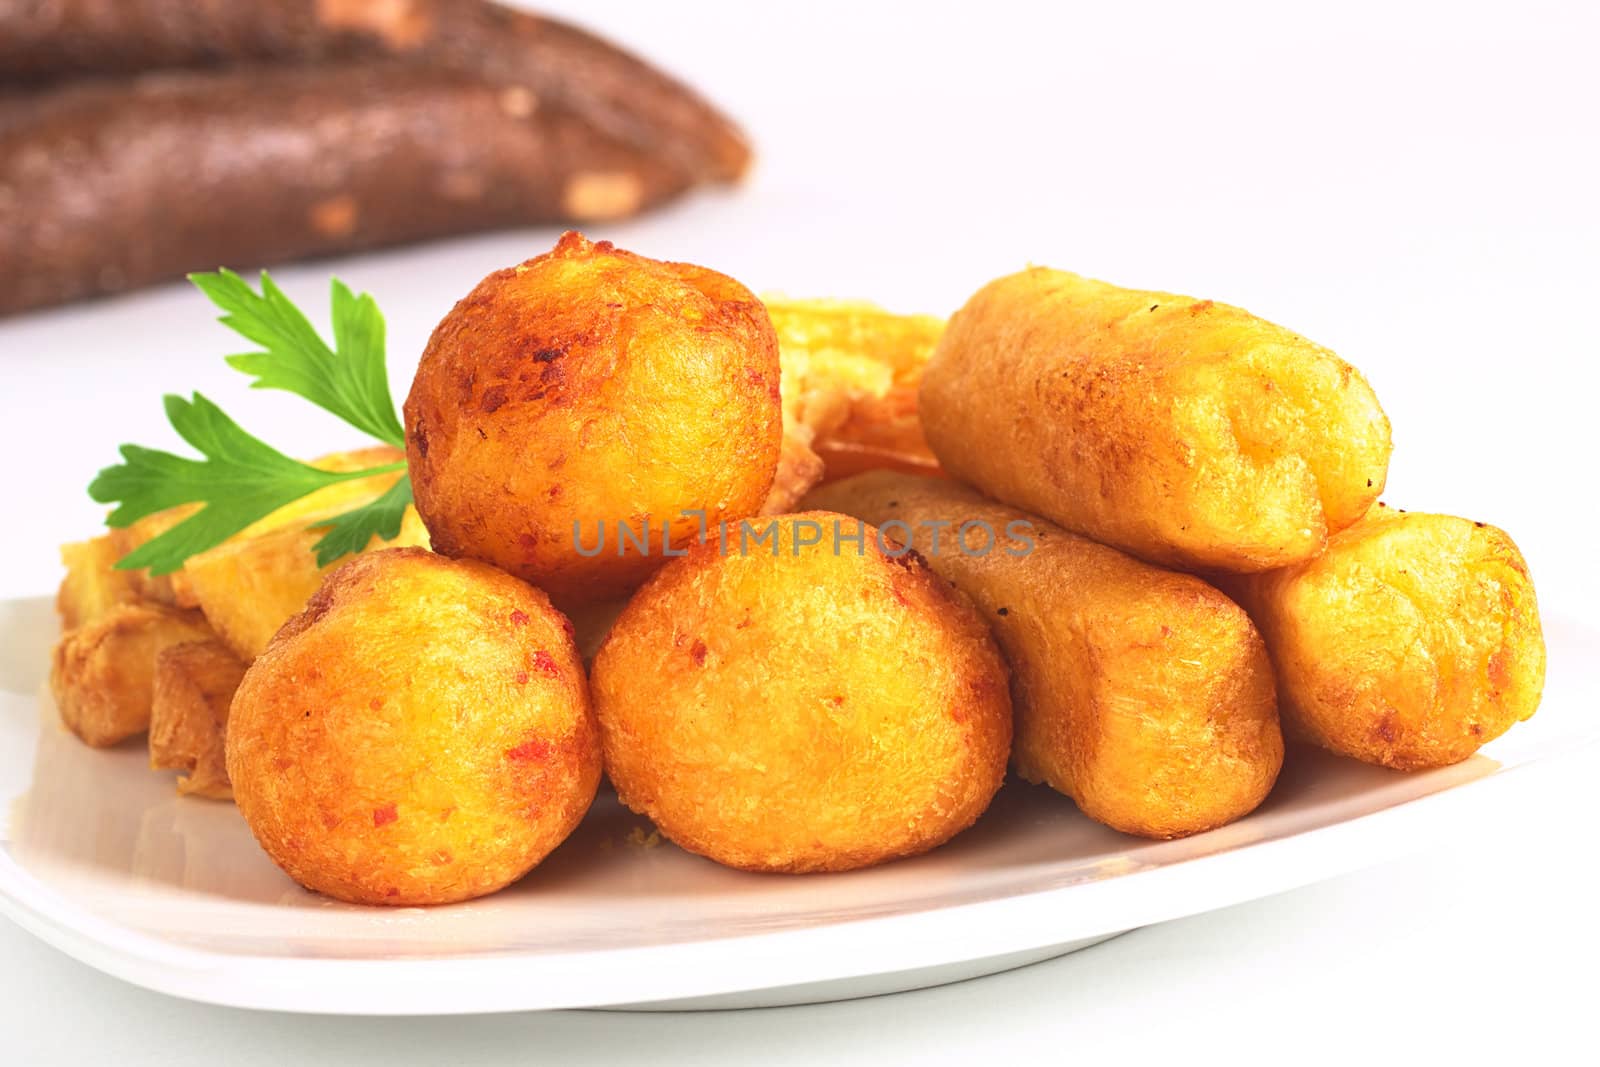 Fried Snacks out of Manioc by ildi